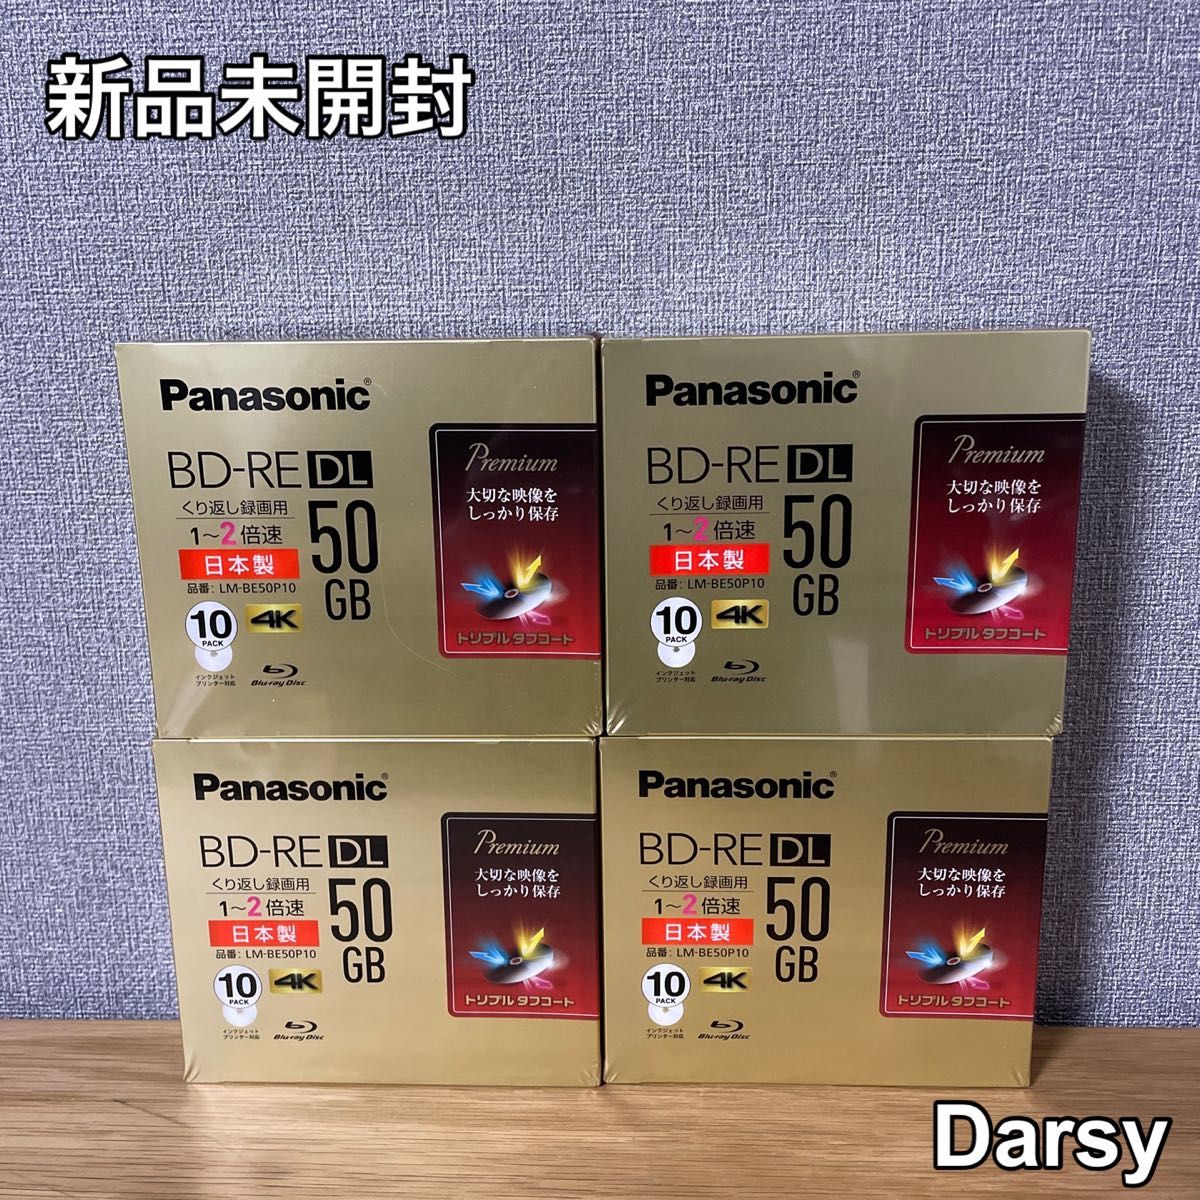 魅力的な価格 Panasonic ブルーレイディスク LM-BE50P10 4セット www 